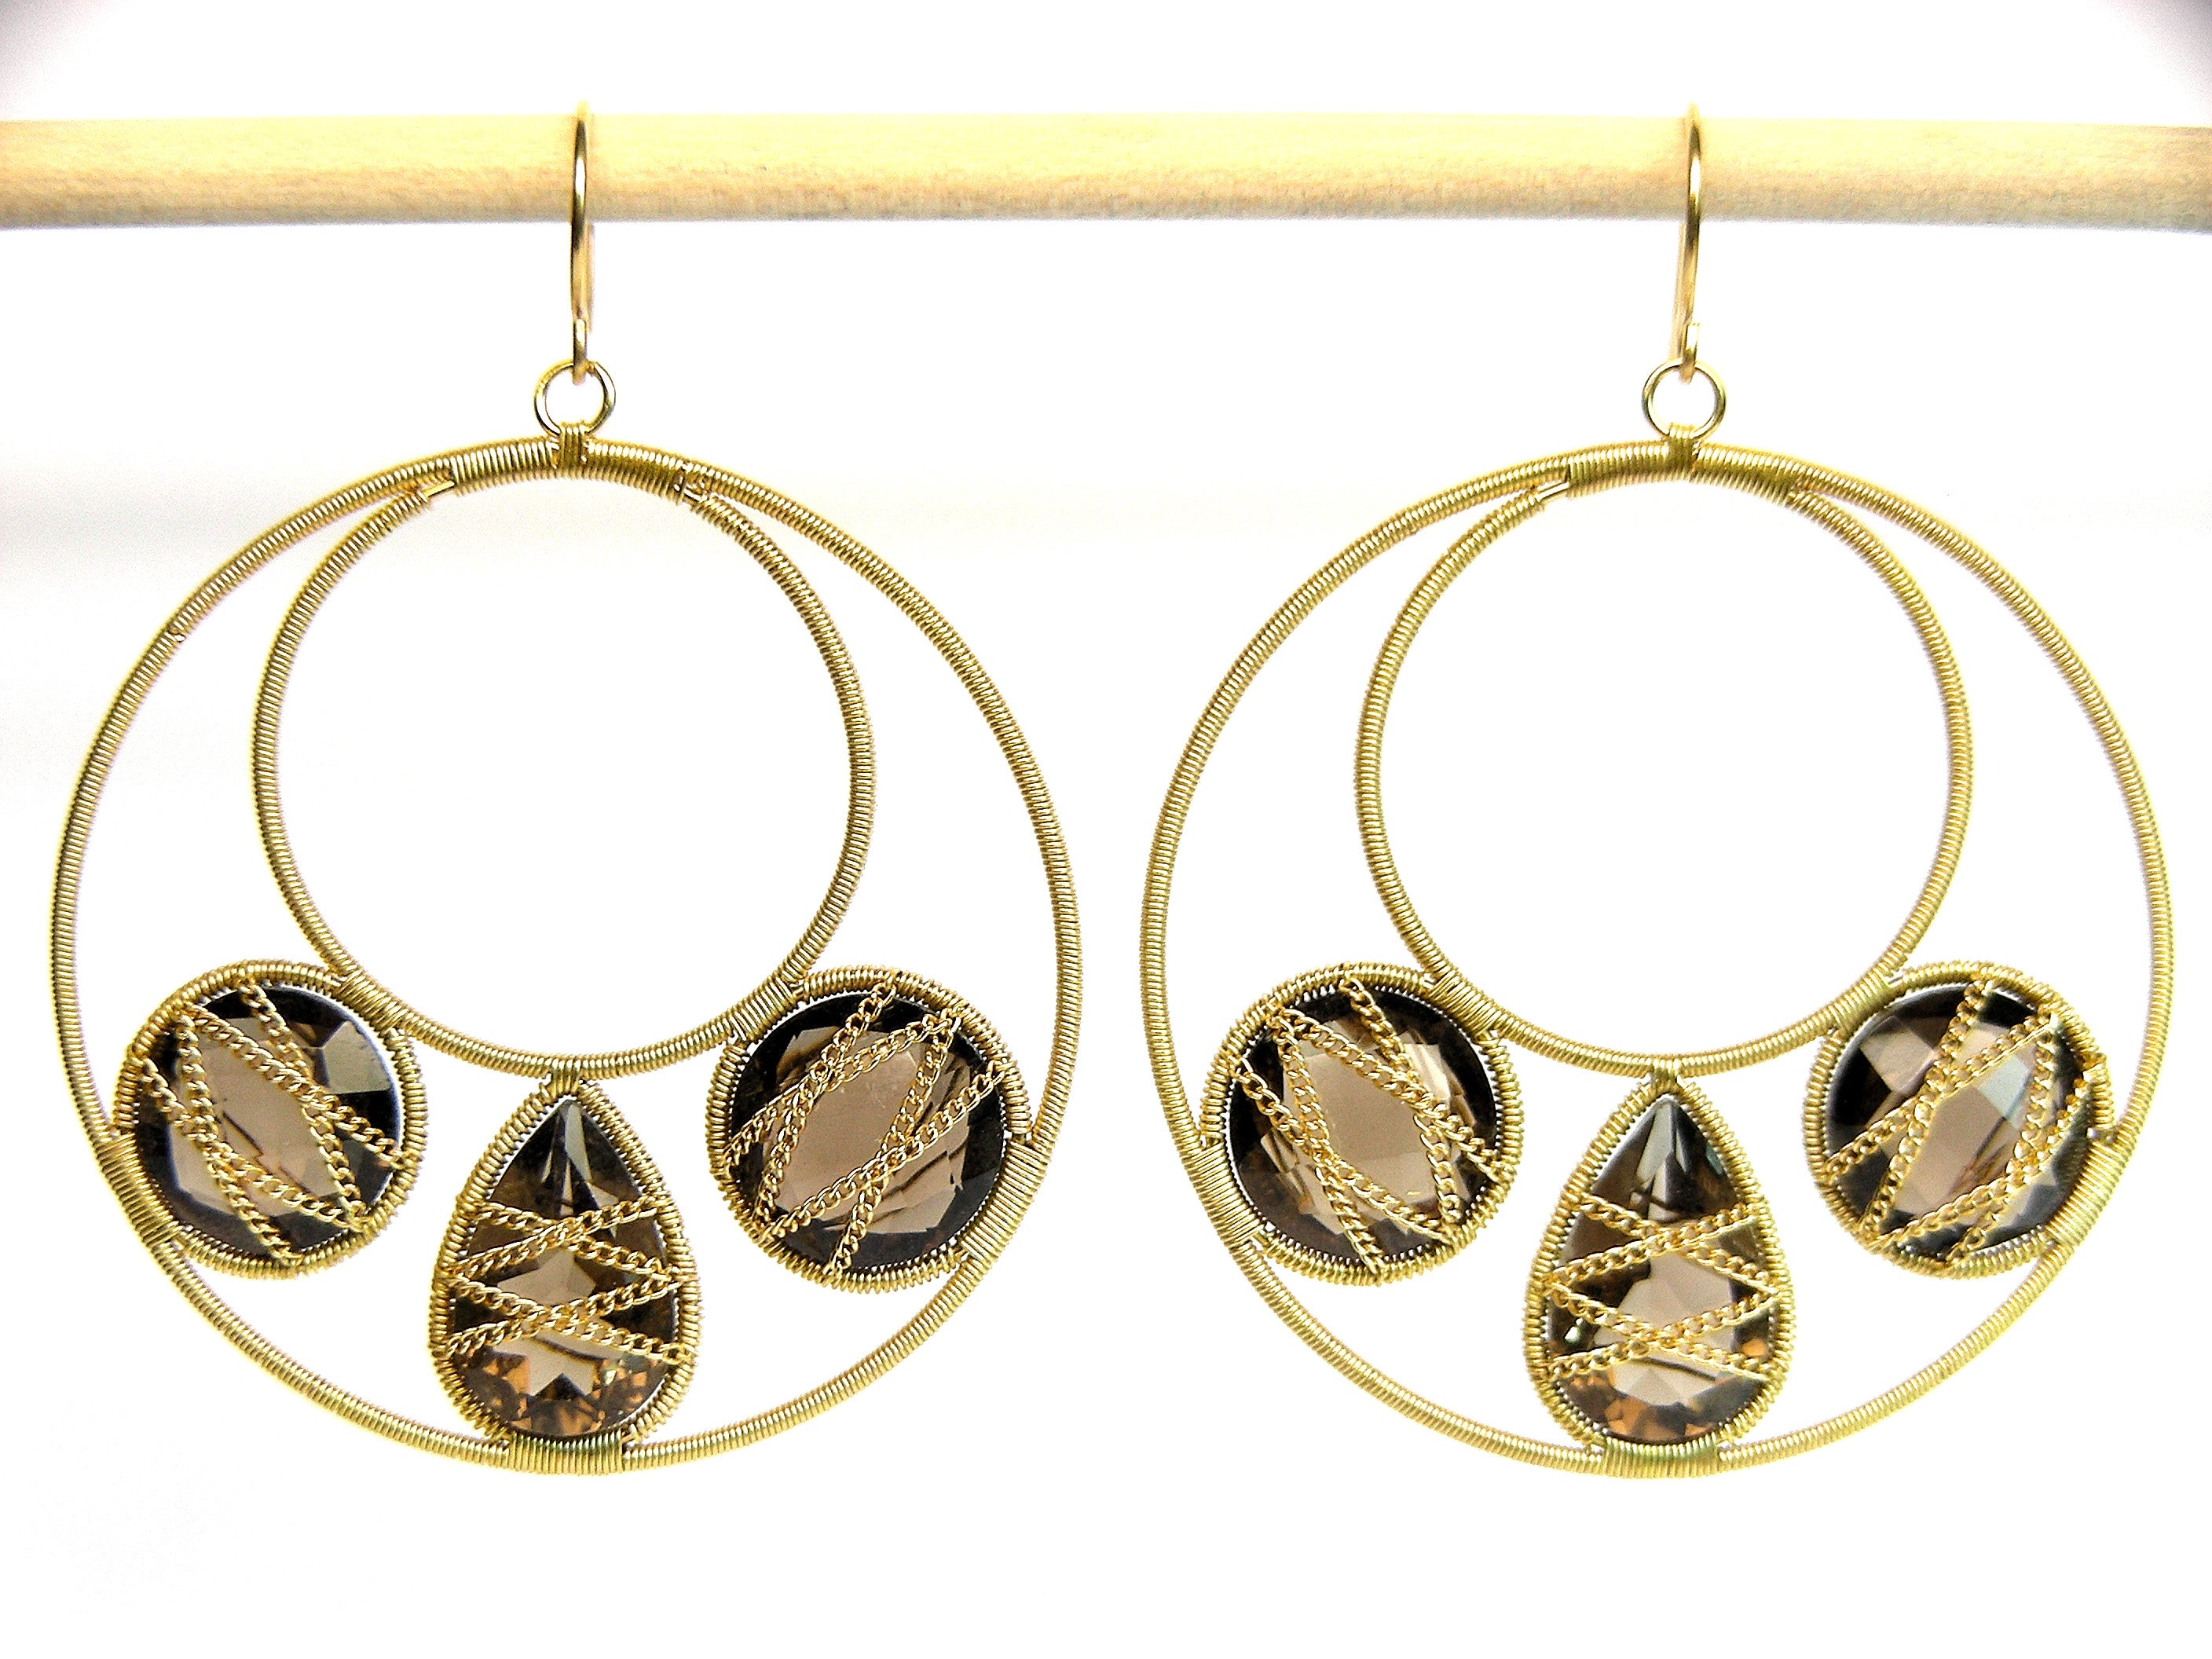 Ohrringe aus 18k Gelbgold mit Rauchquarz-Motiven 3 Motiv Mandala
Summer Splash ist eine Kollektion von einfach zu tragenden, modisch orientierten Ohrringen, die mit Leichtigkeit, Chic und Glam getragen werden können. Nur diese Stücke dieser